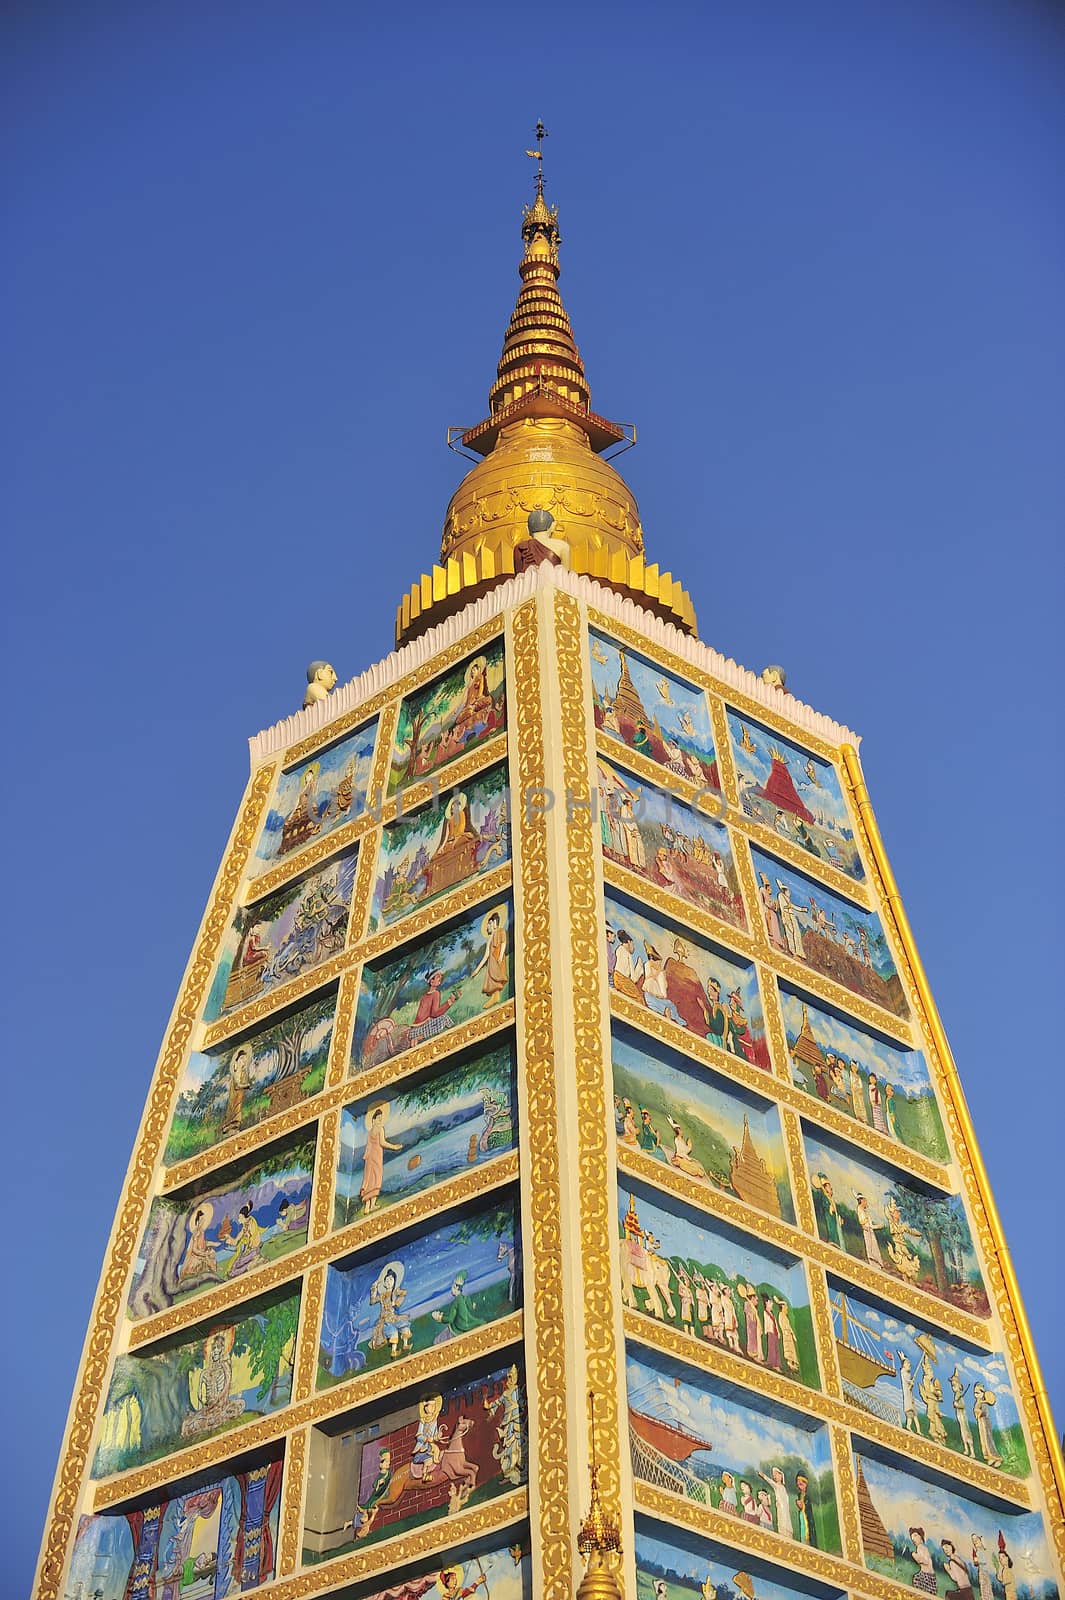 Part of the Shwedagon Pagoda in Yangon, Myanmar